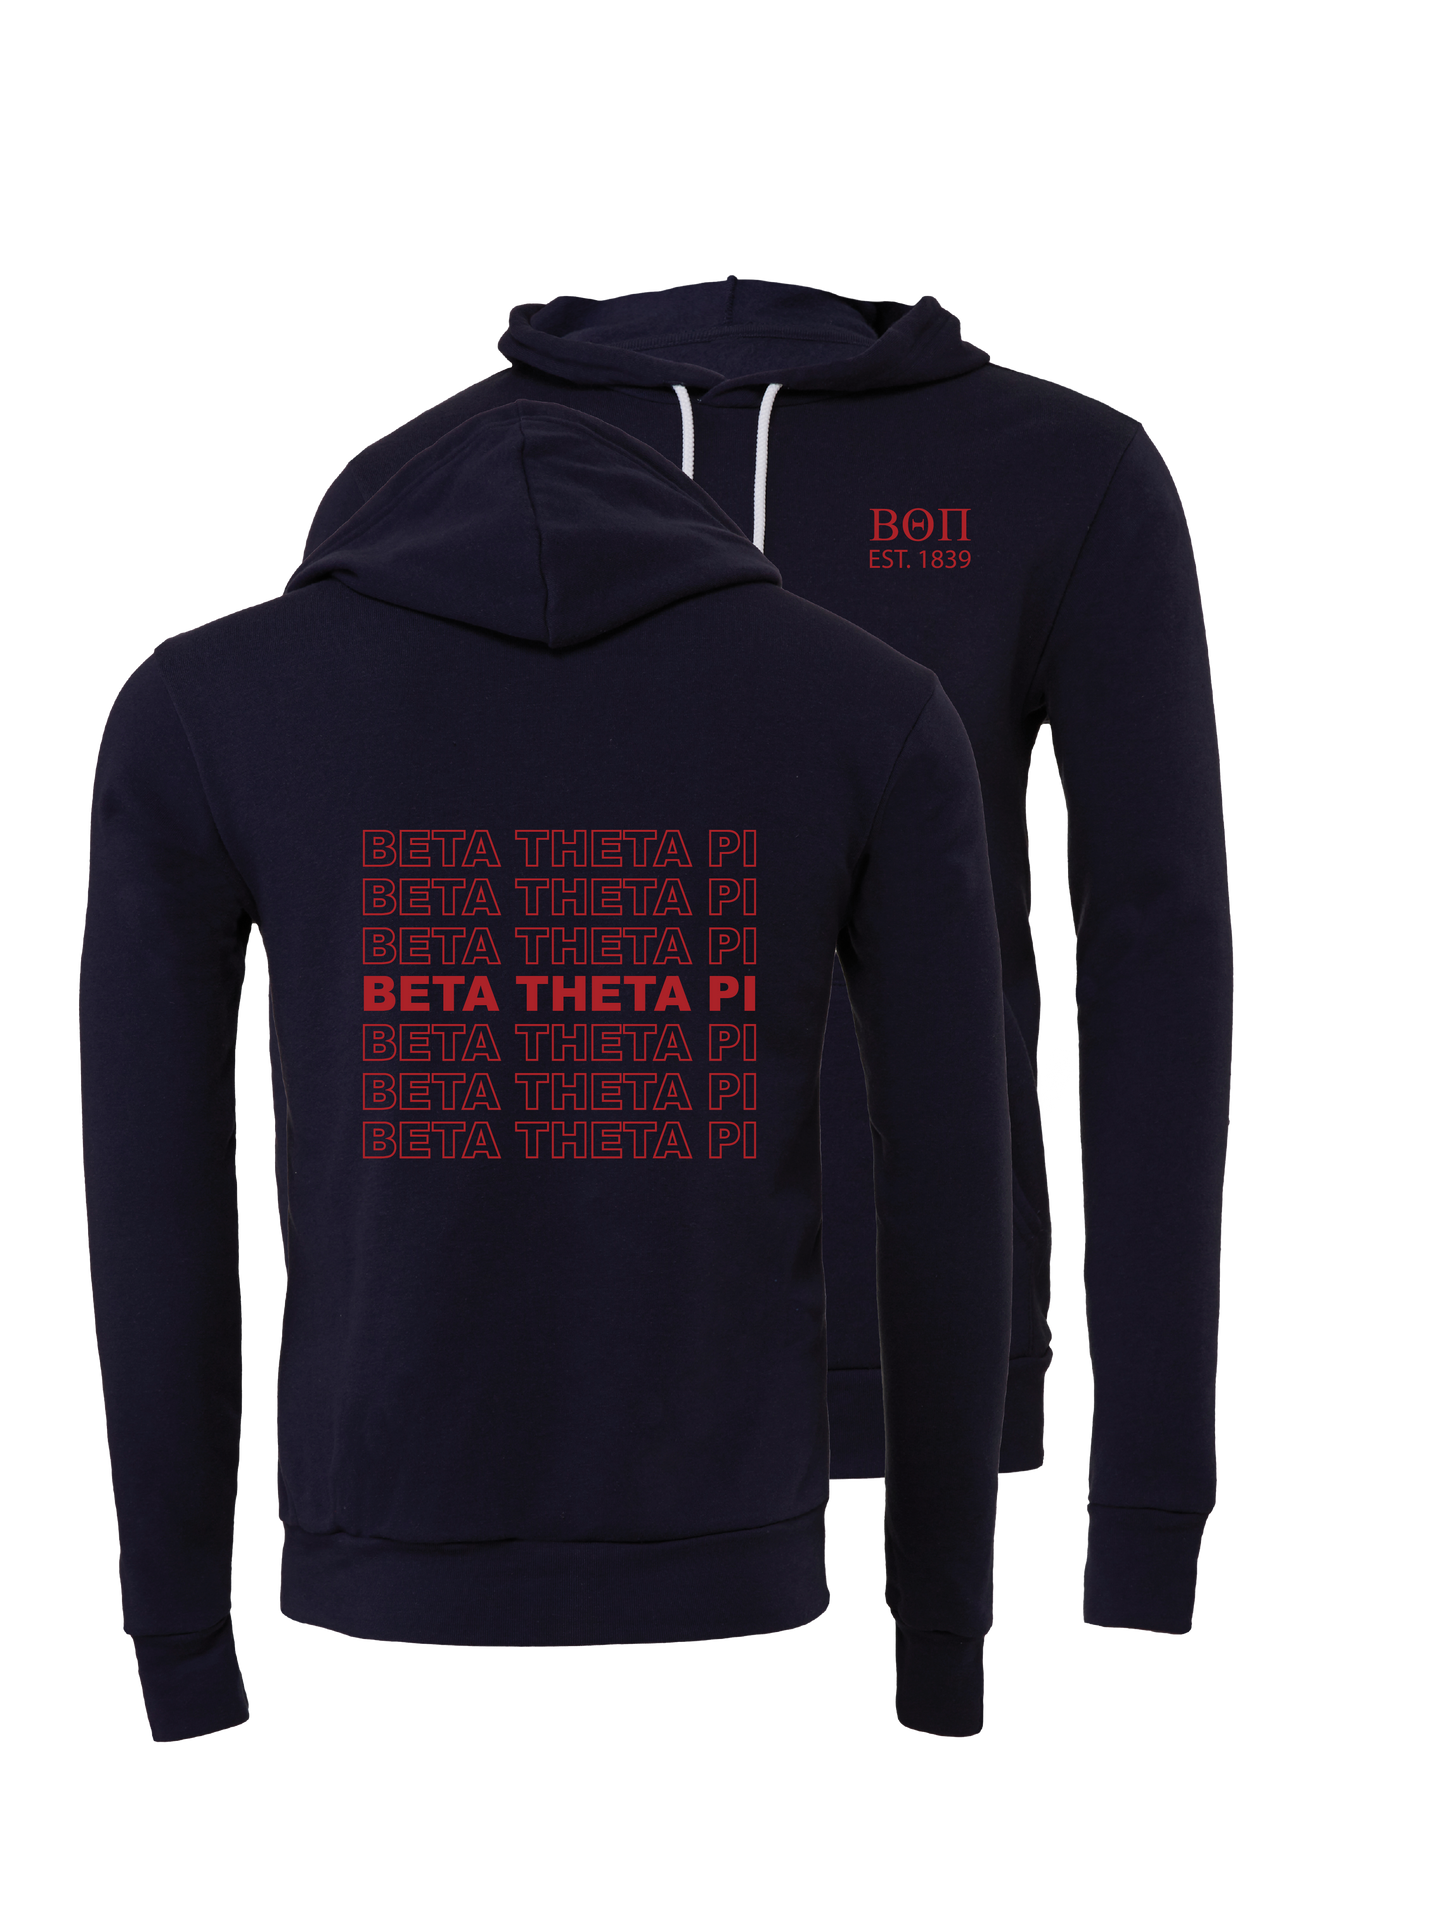 Beta Theta Pi Repeating Name Hooded Sweatshirts